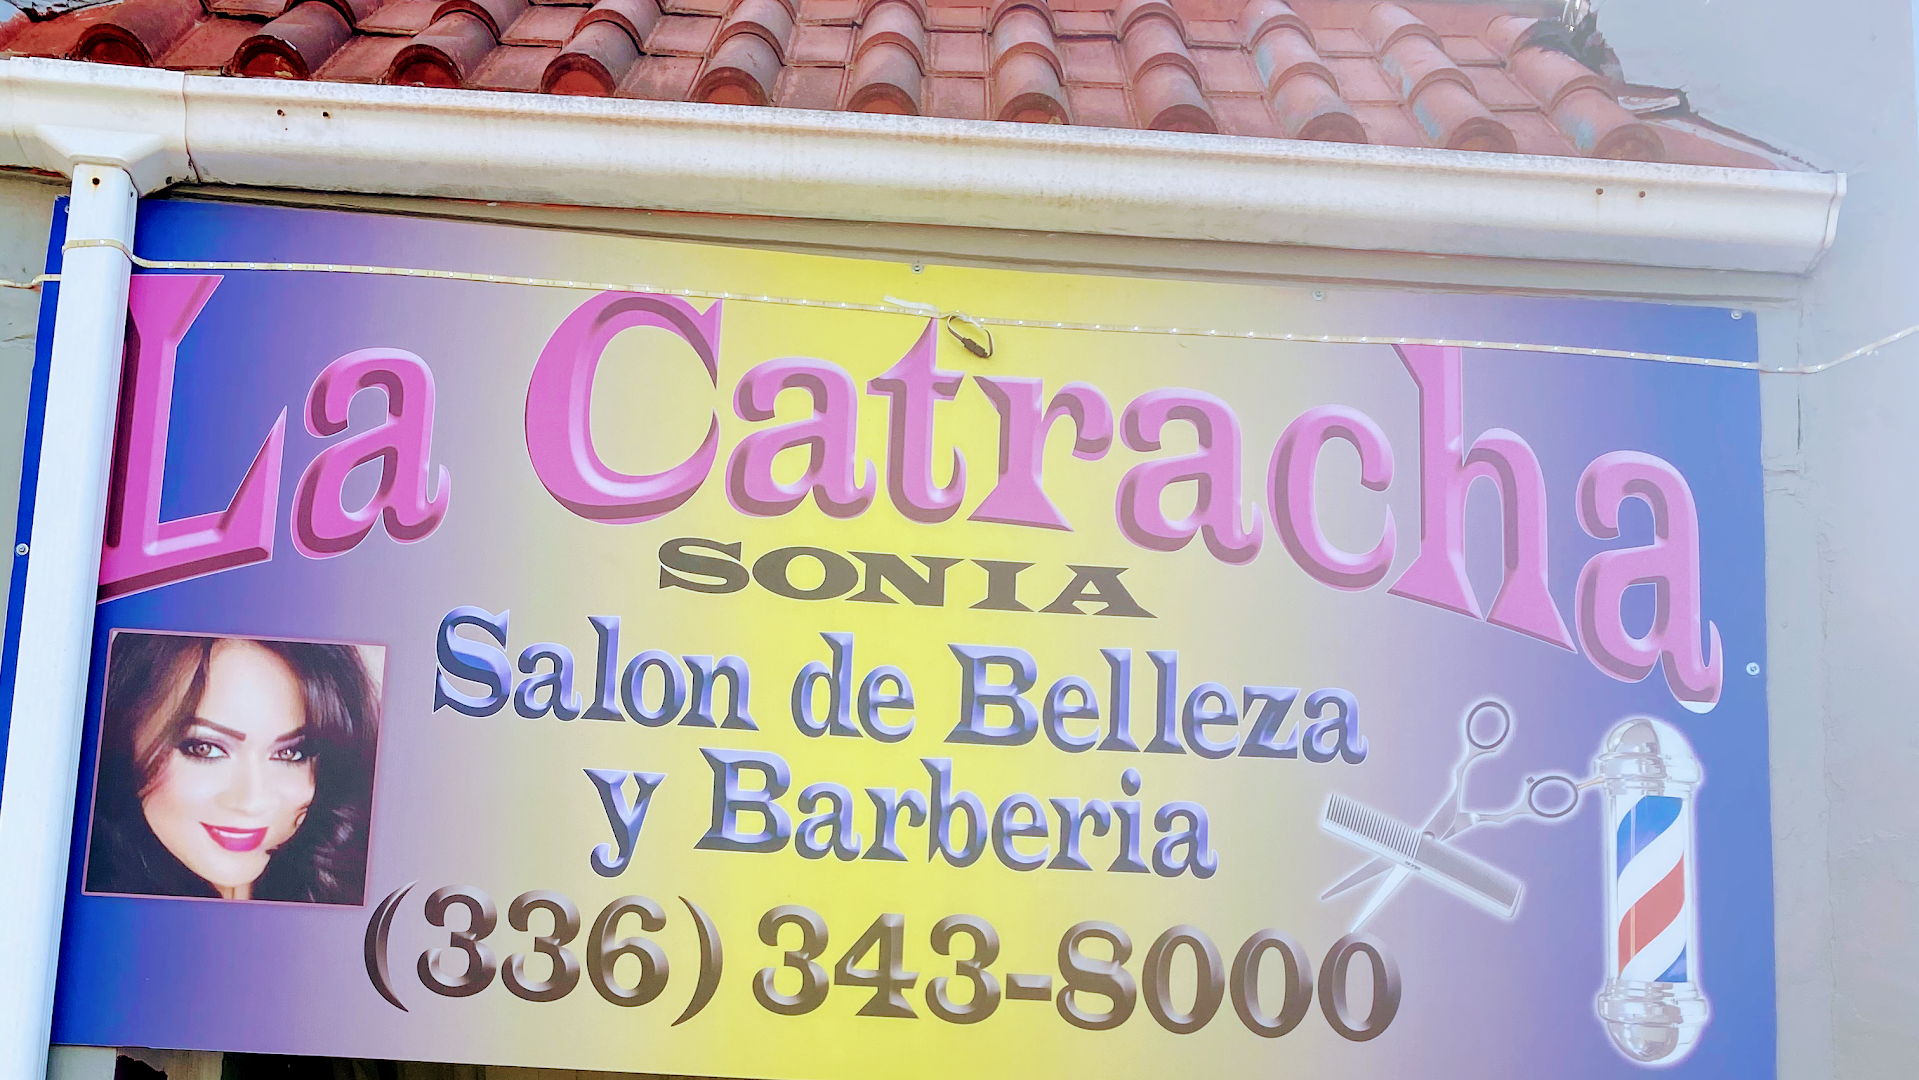 LA CATRACHA SALN DE BELLEZA Y BARBERA